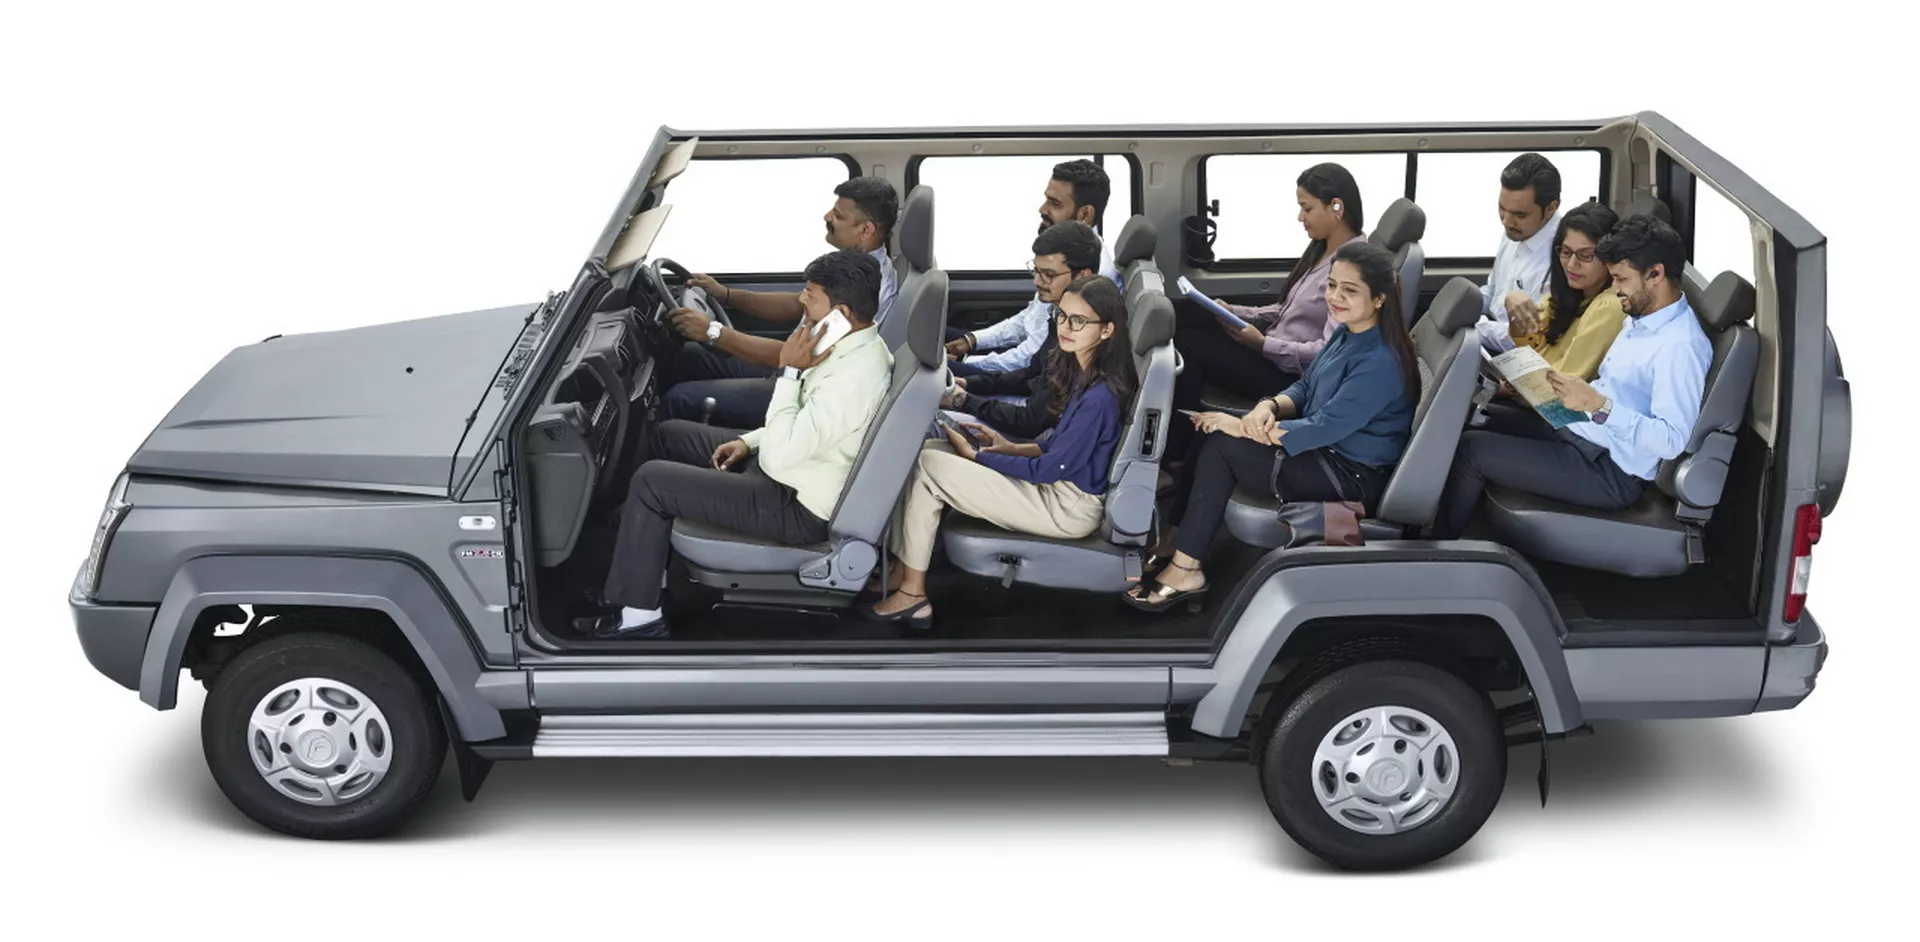 انطلاق SUV هندية عملاقة بـ 10 مقاعد وتصميم مستوحى من سيارات جي كلاس القديمة 1